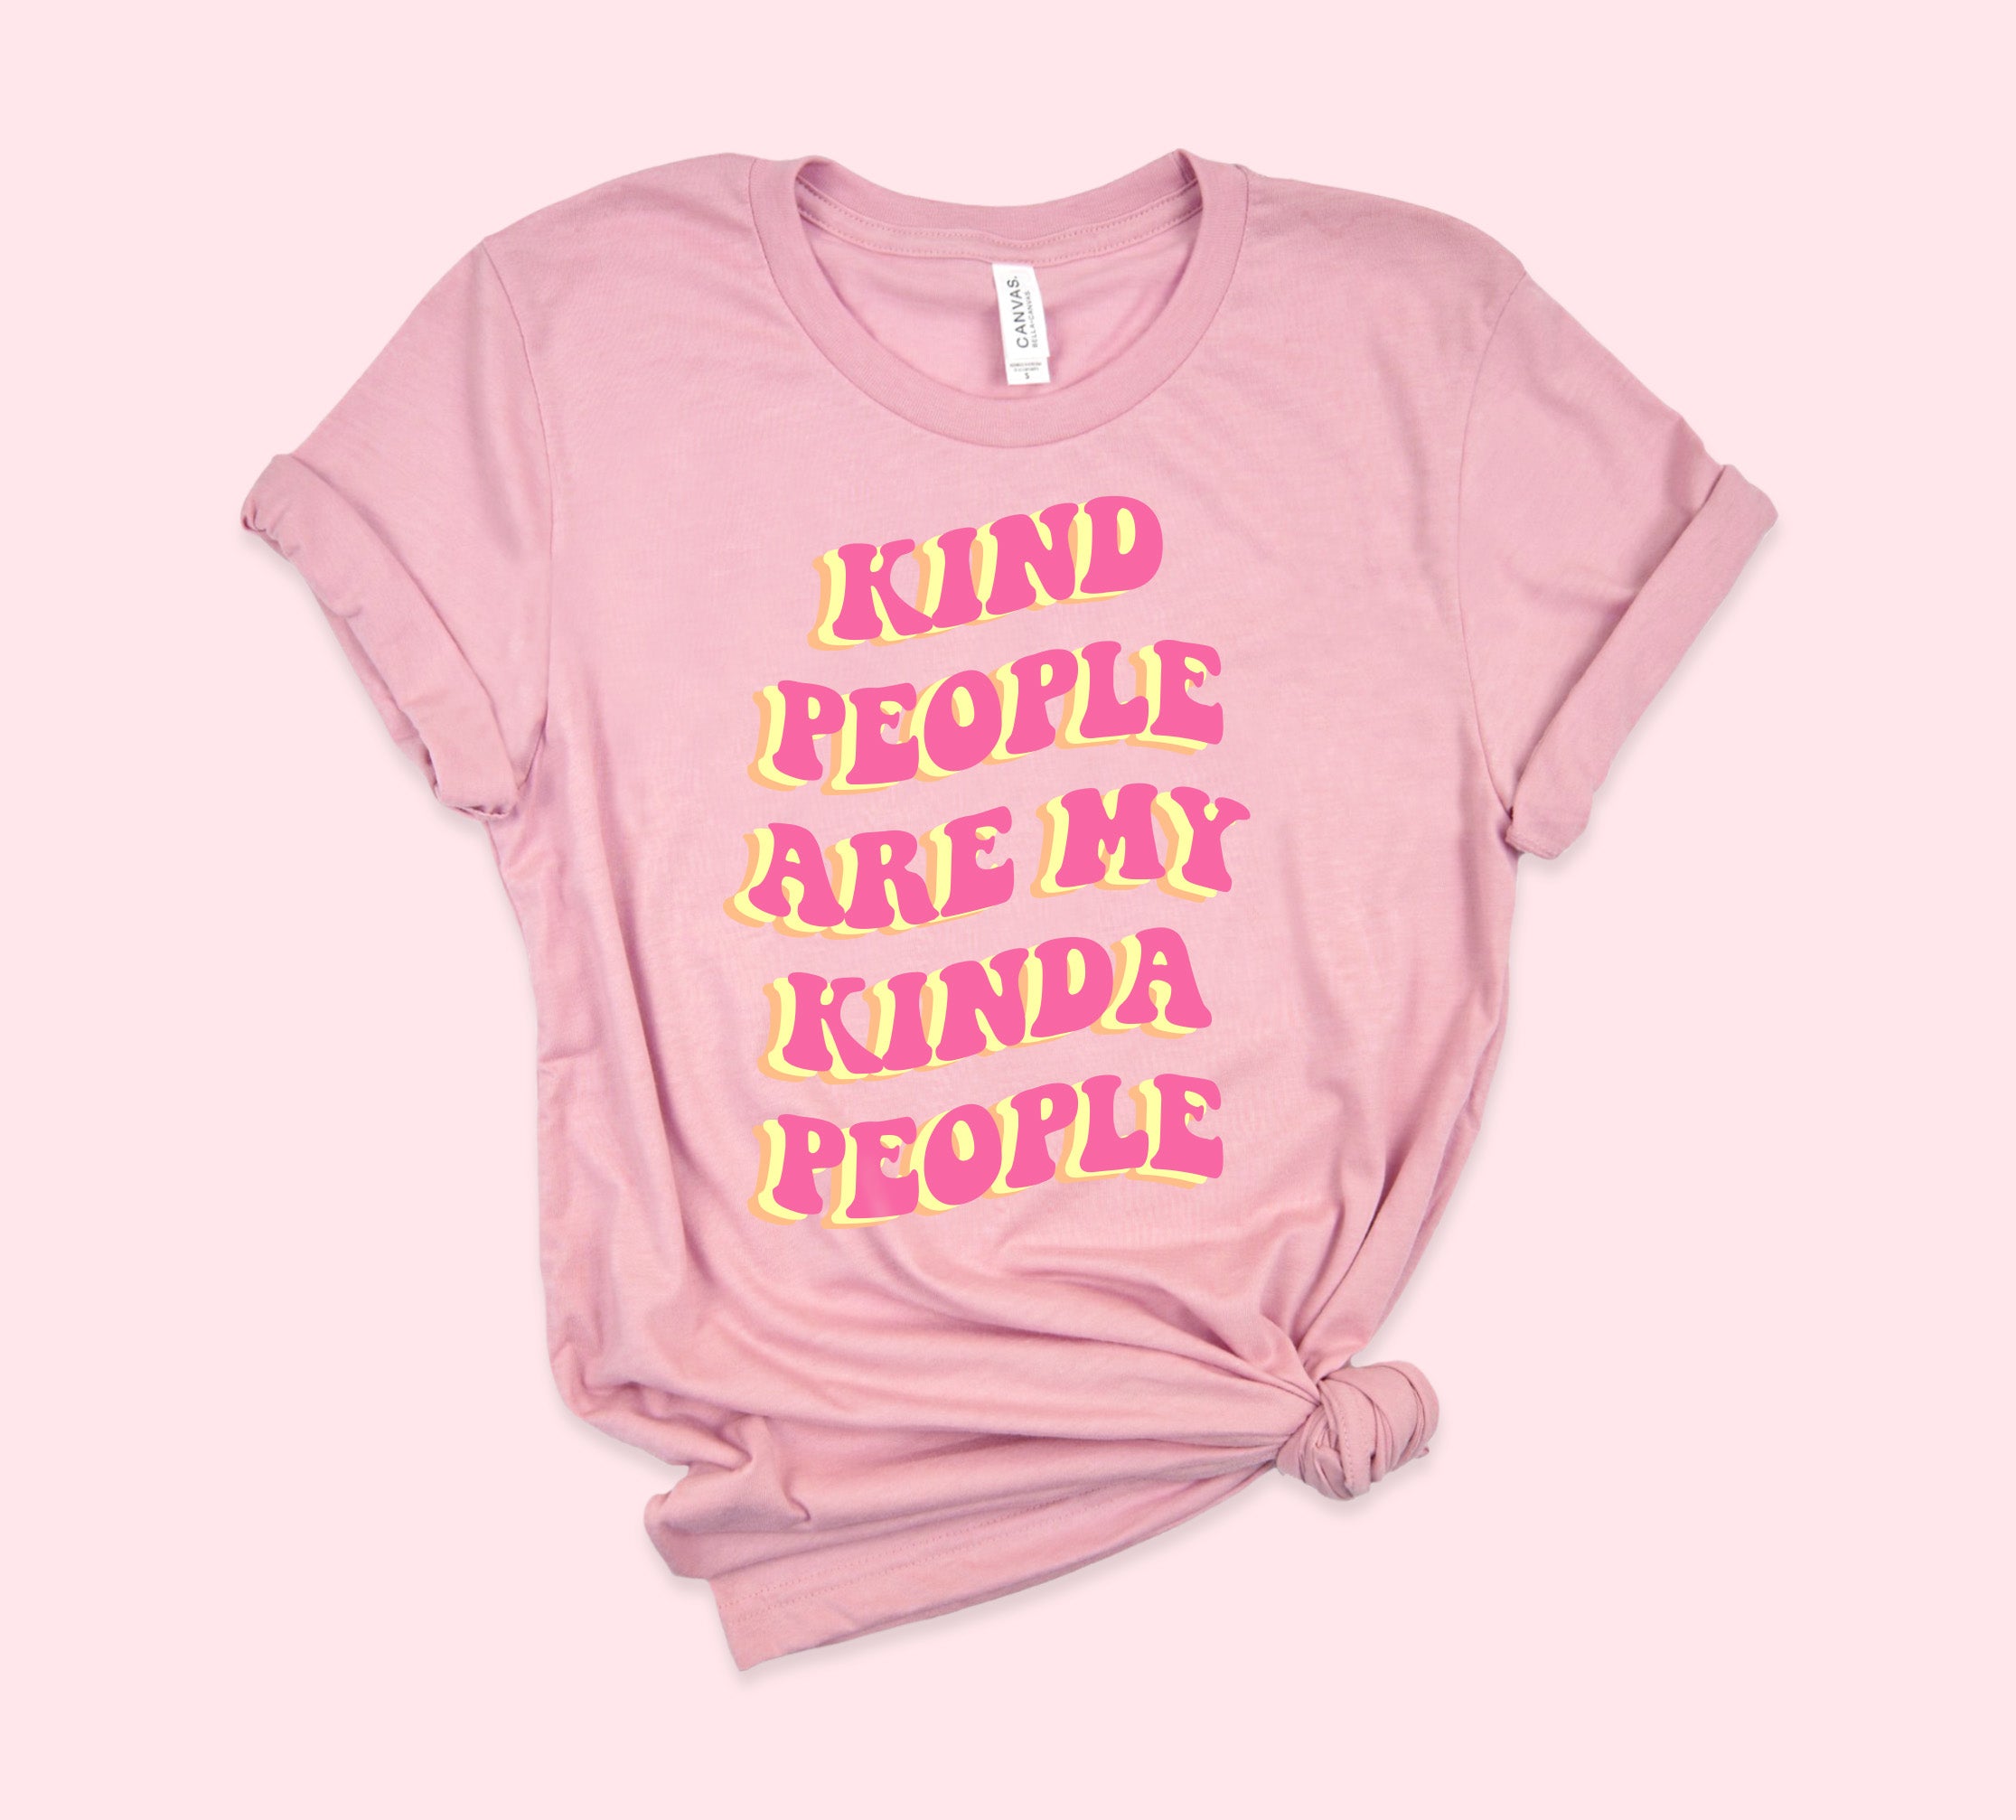 Kind People Are My Kinda People Shirt - HighCiti